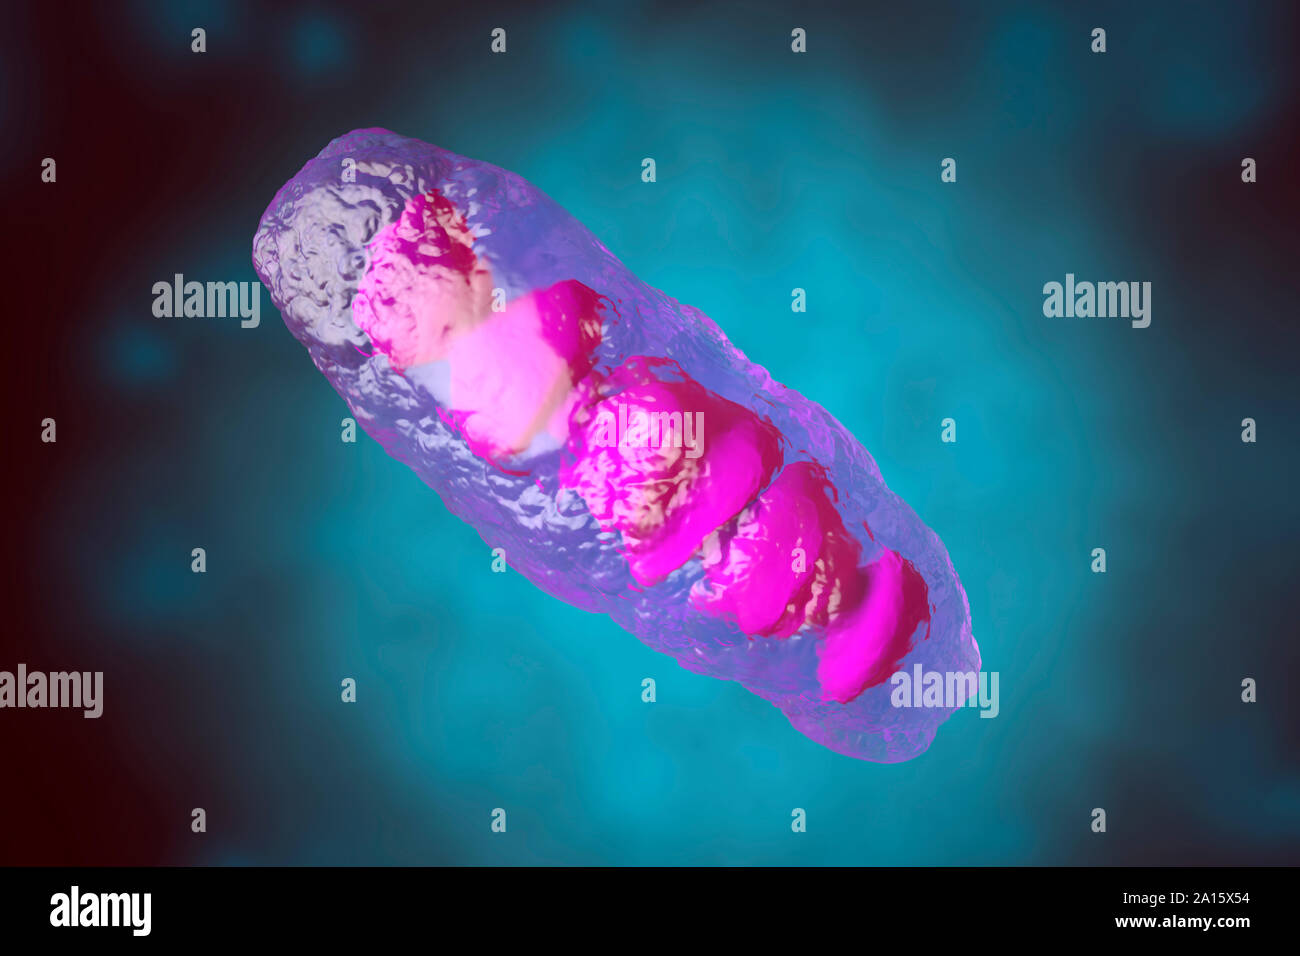 Illustration en rendu 3D, la visualisation d'une mitochondrie anatomiquement corrects, une organelle de la plupart des cellules eucaryotes et d'autres Banque D'Images